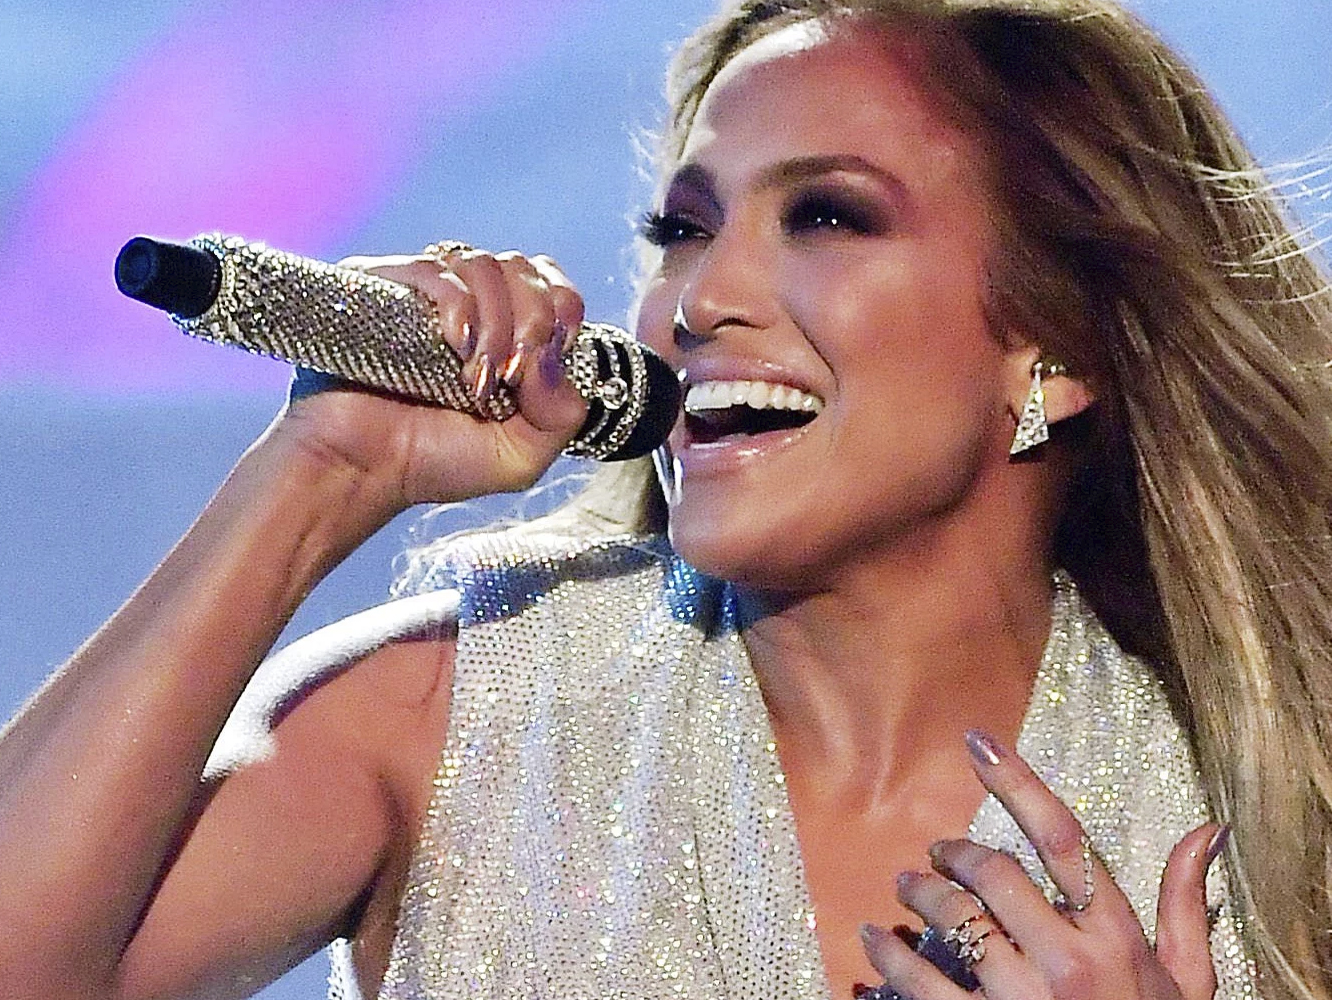  Jennifer Lopez saldrá de gira en verano, pero no con su álbum imaginario en español